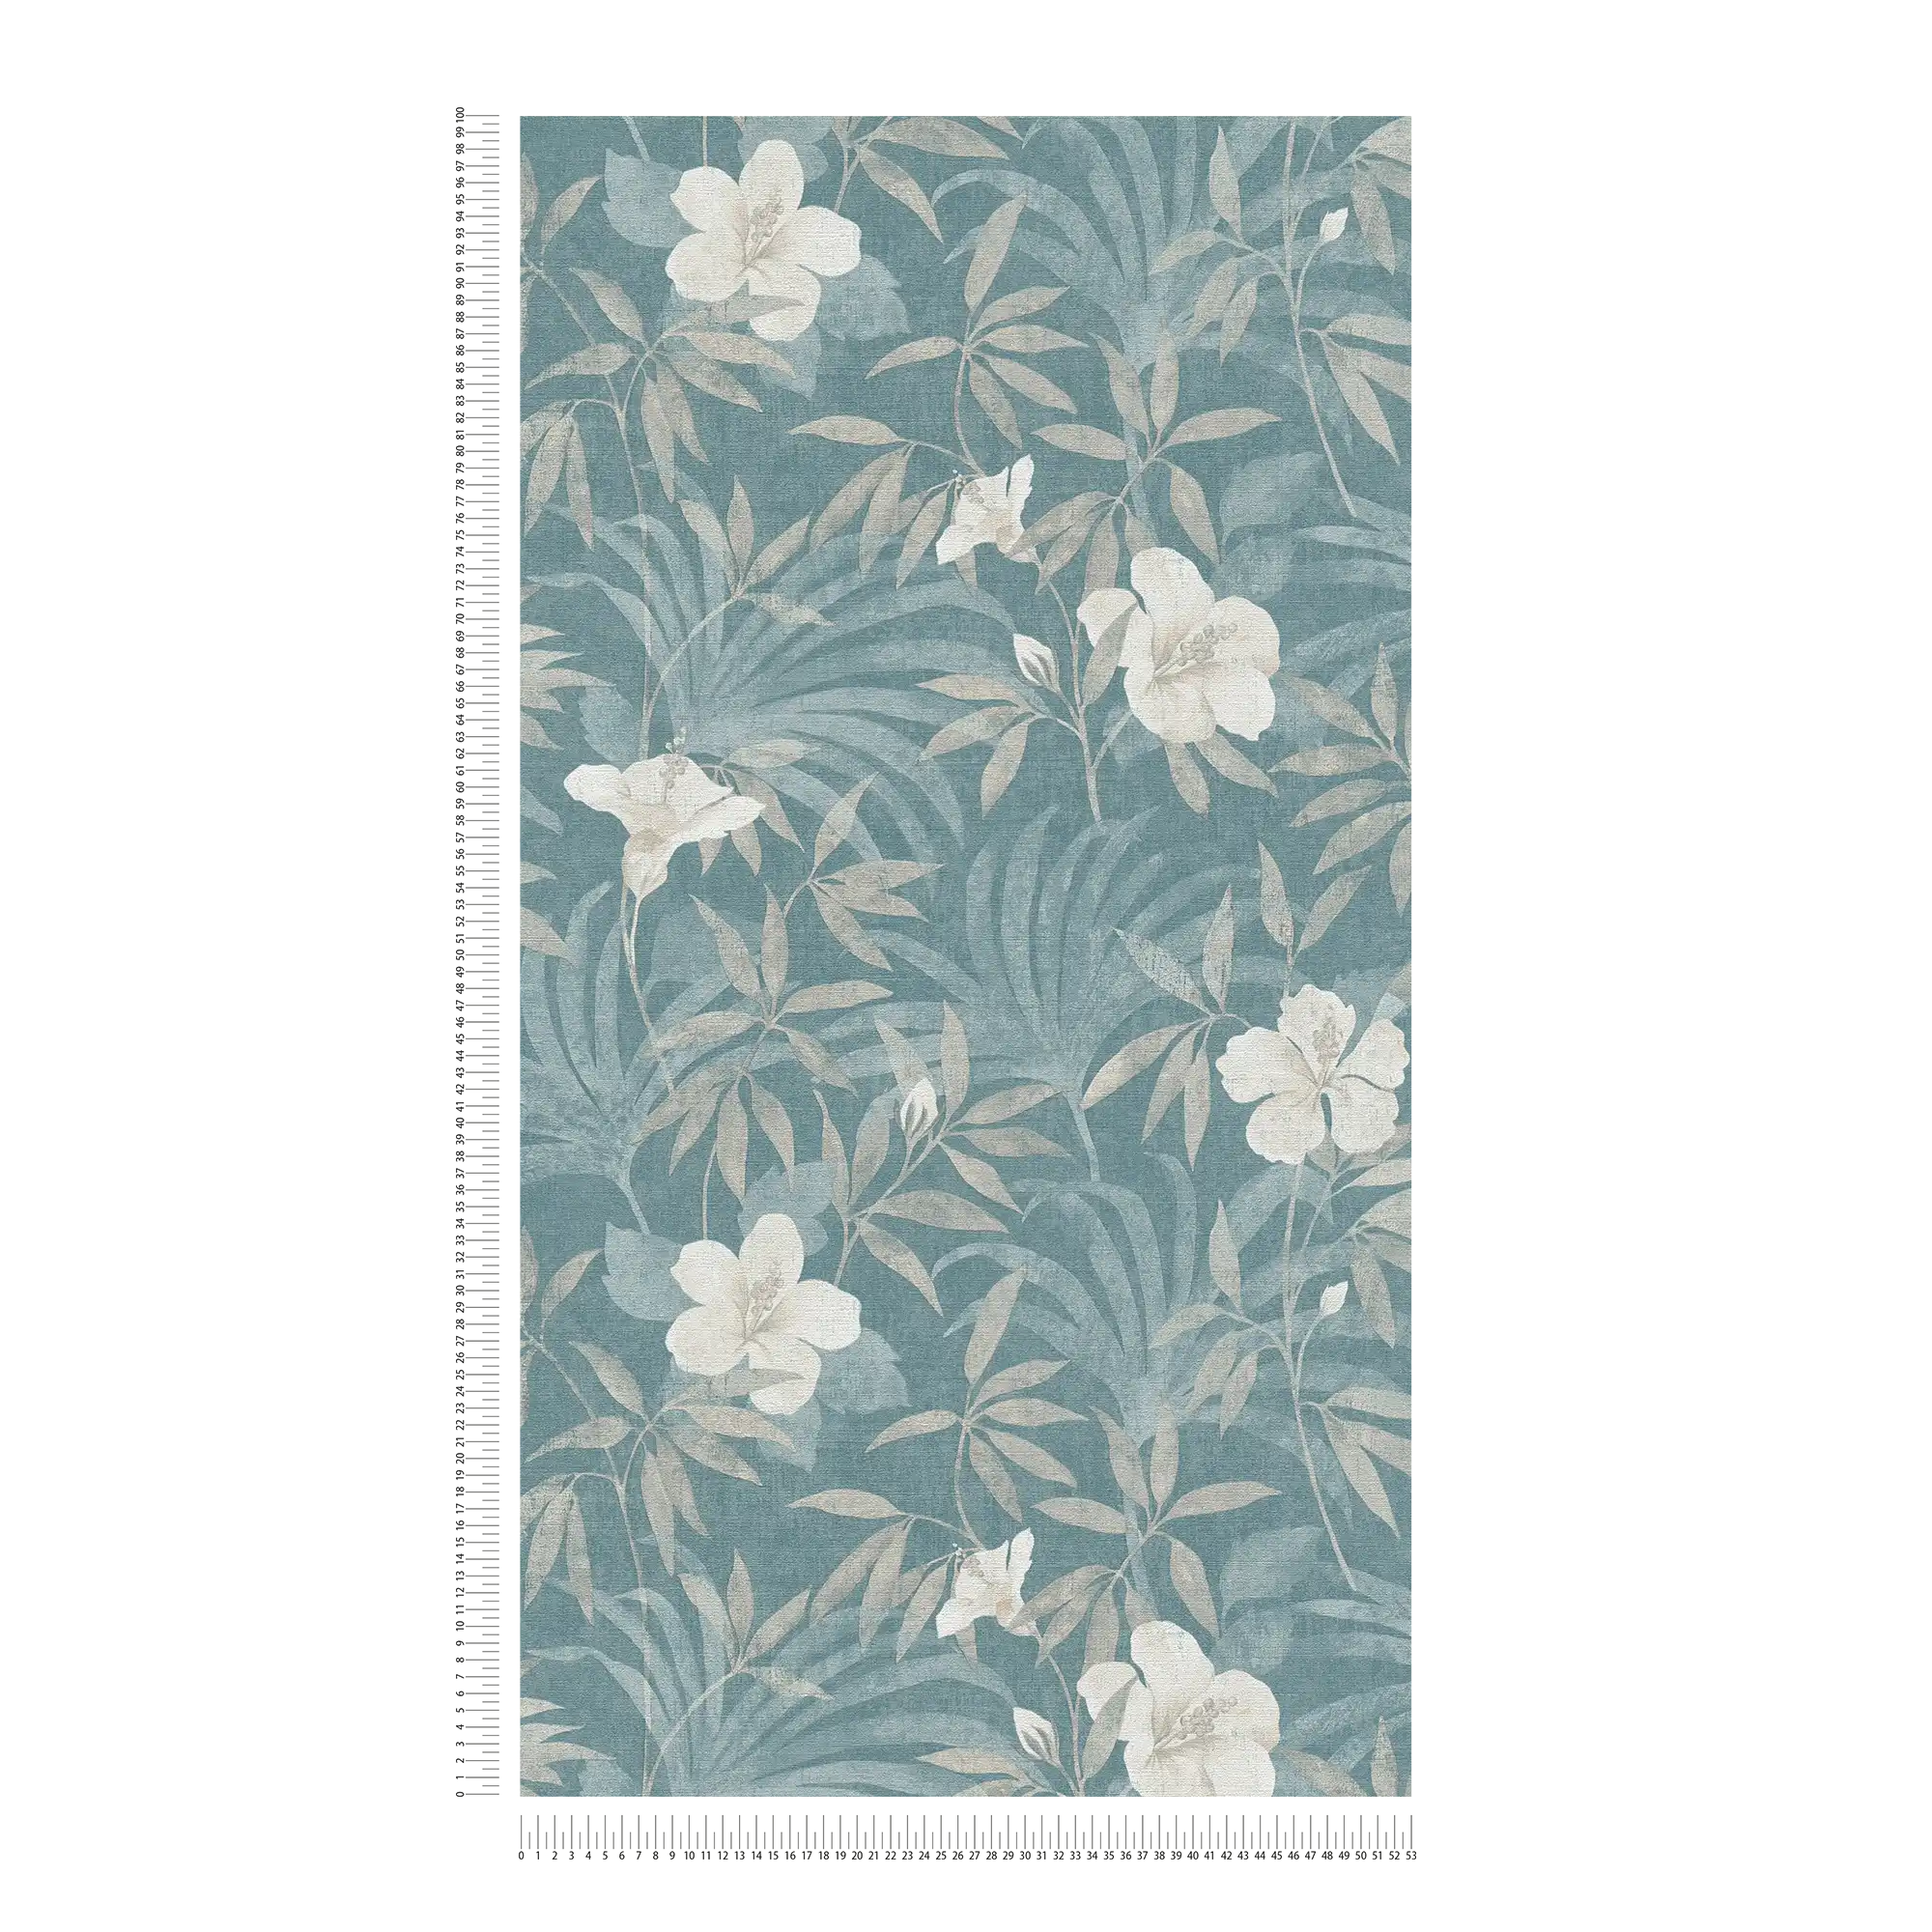             behang petrol jungle patroon met hibiscusbloemen - beige, blauw
        